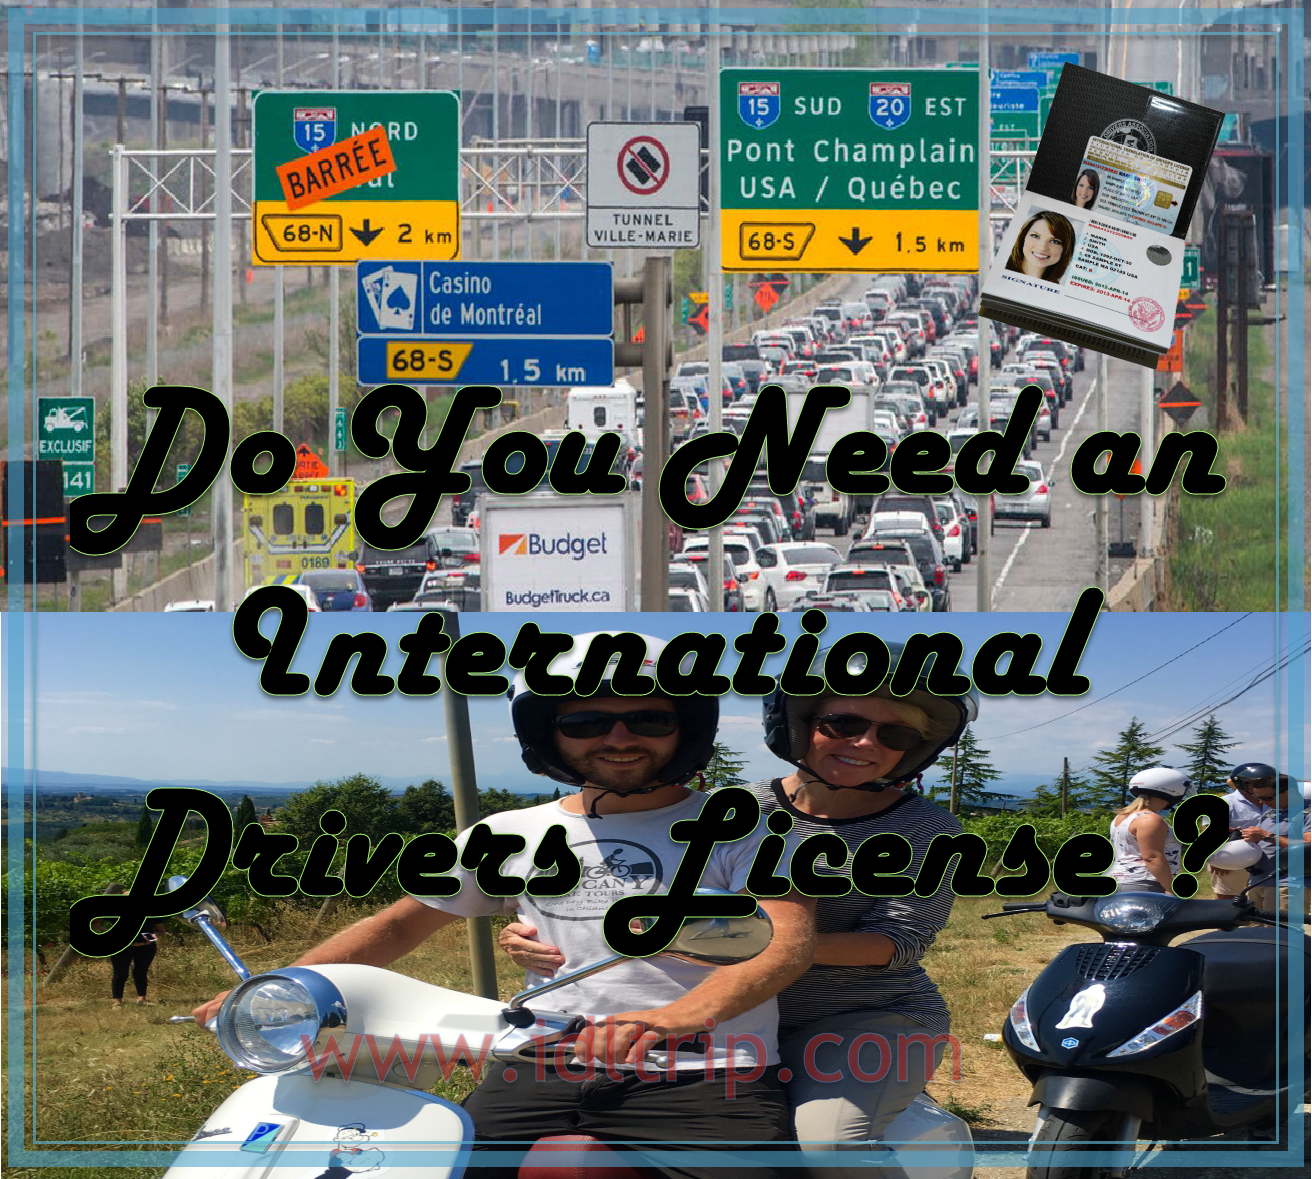 Internationaler Führerschein